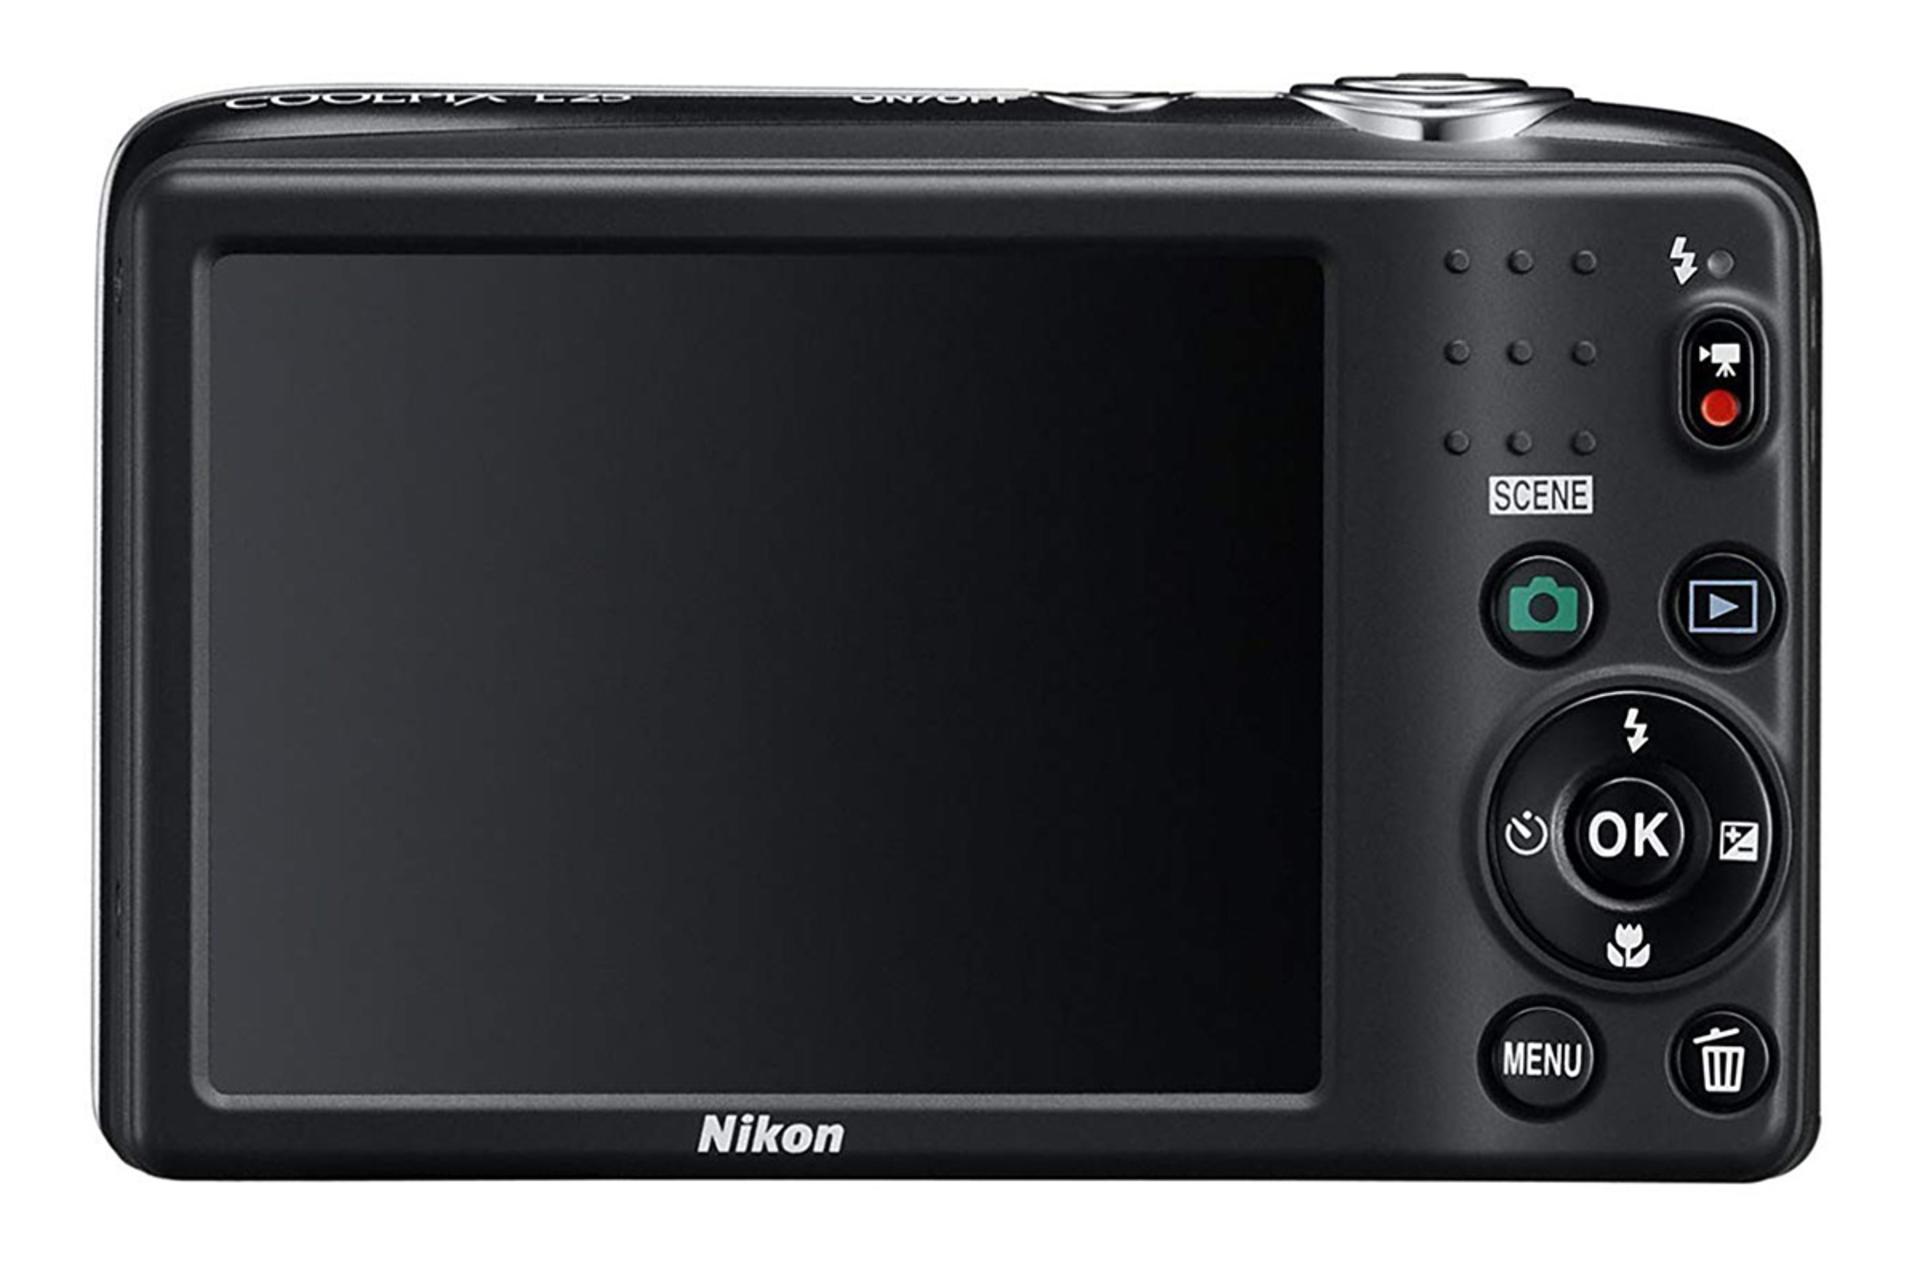 مرجع متخصصين ايران Nikon Coolpix L25 / نيكون كول پيكس ال 25